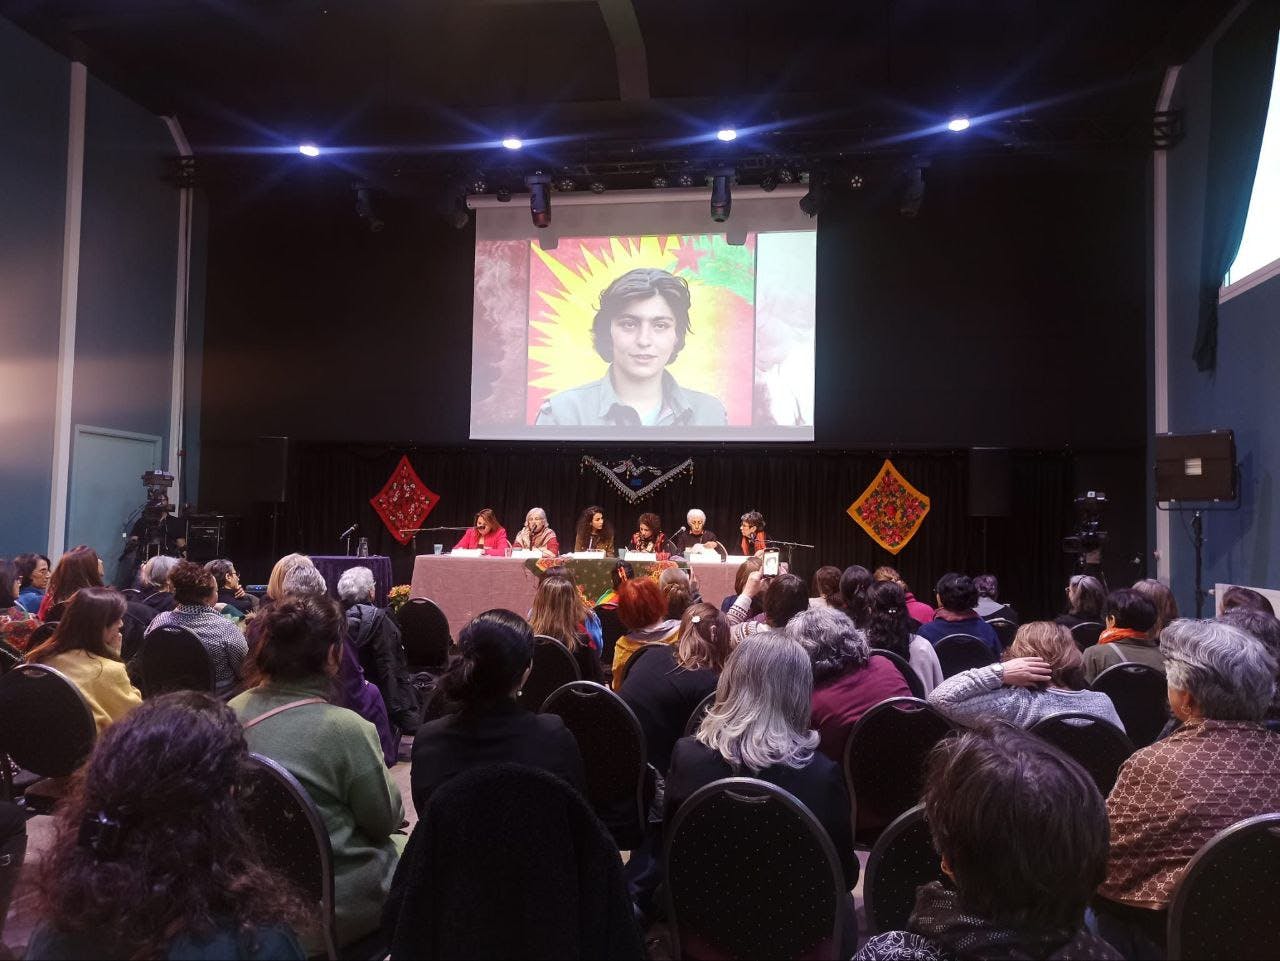 تصویر جمعیت حاضر در کنفرانس. روی دیوار صفحه نمایشی هست که عکس یکی از شهدای زن کردستان را نمایش میدهد.